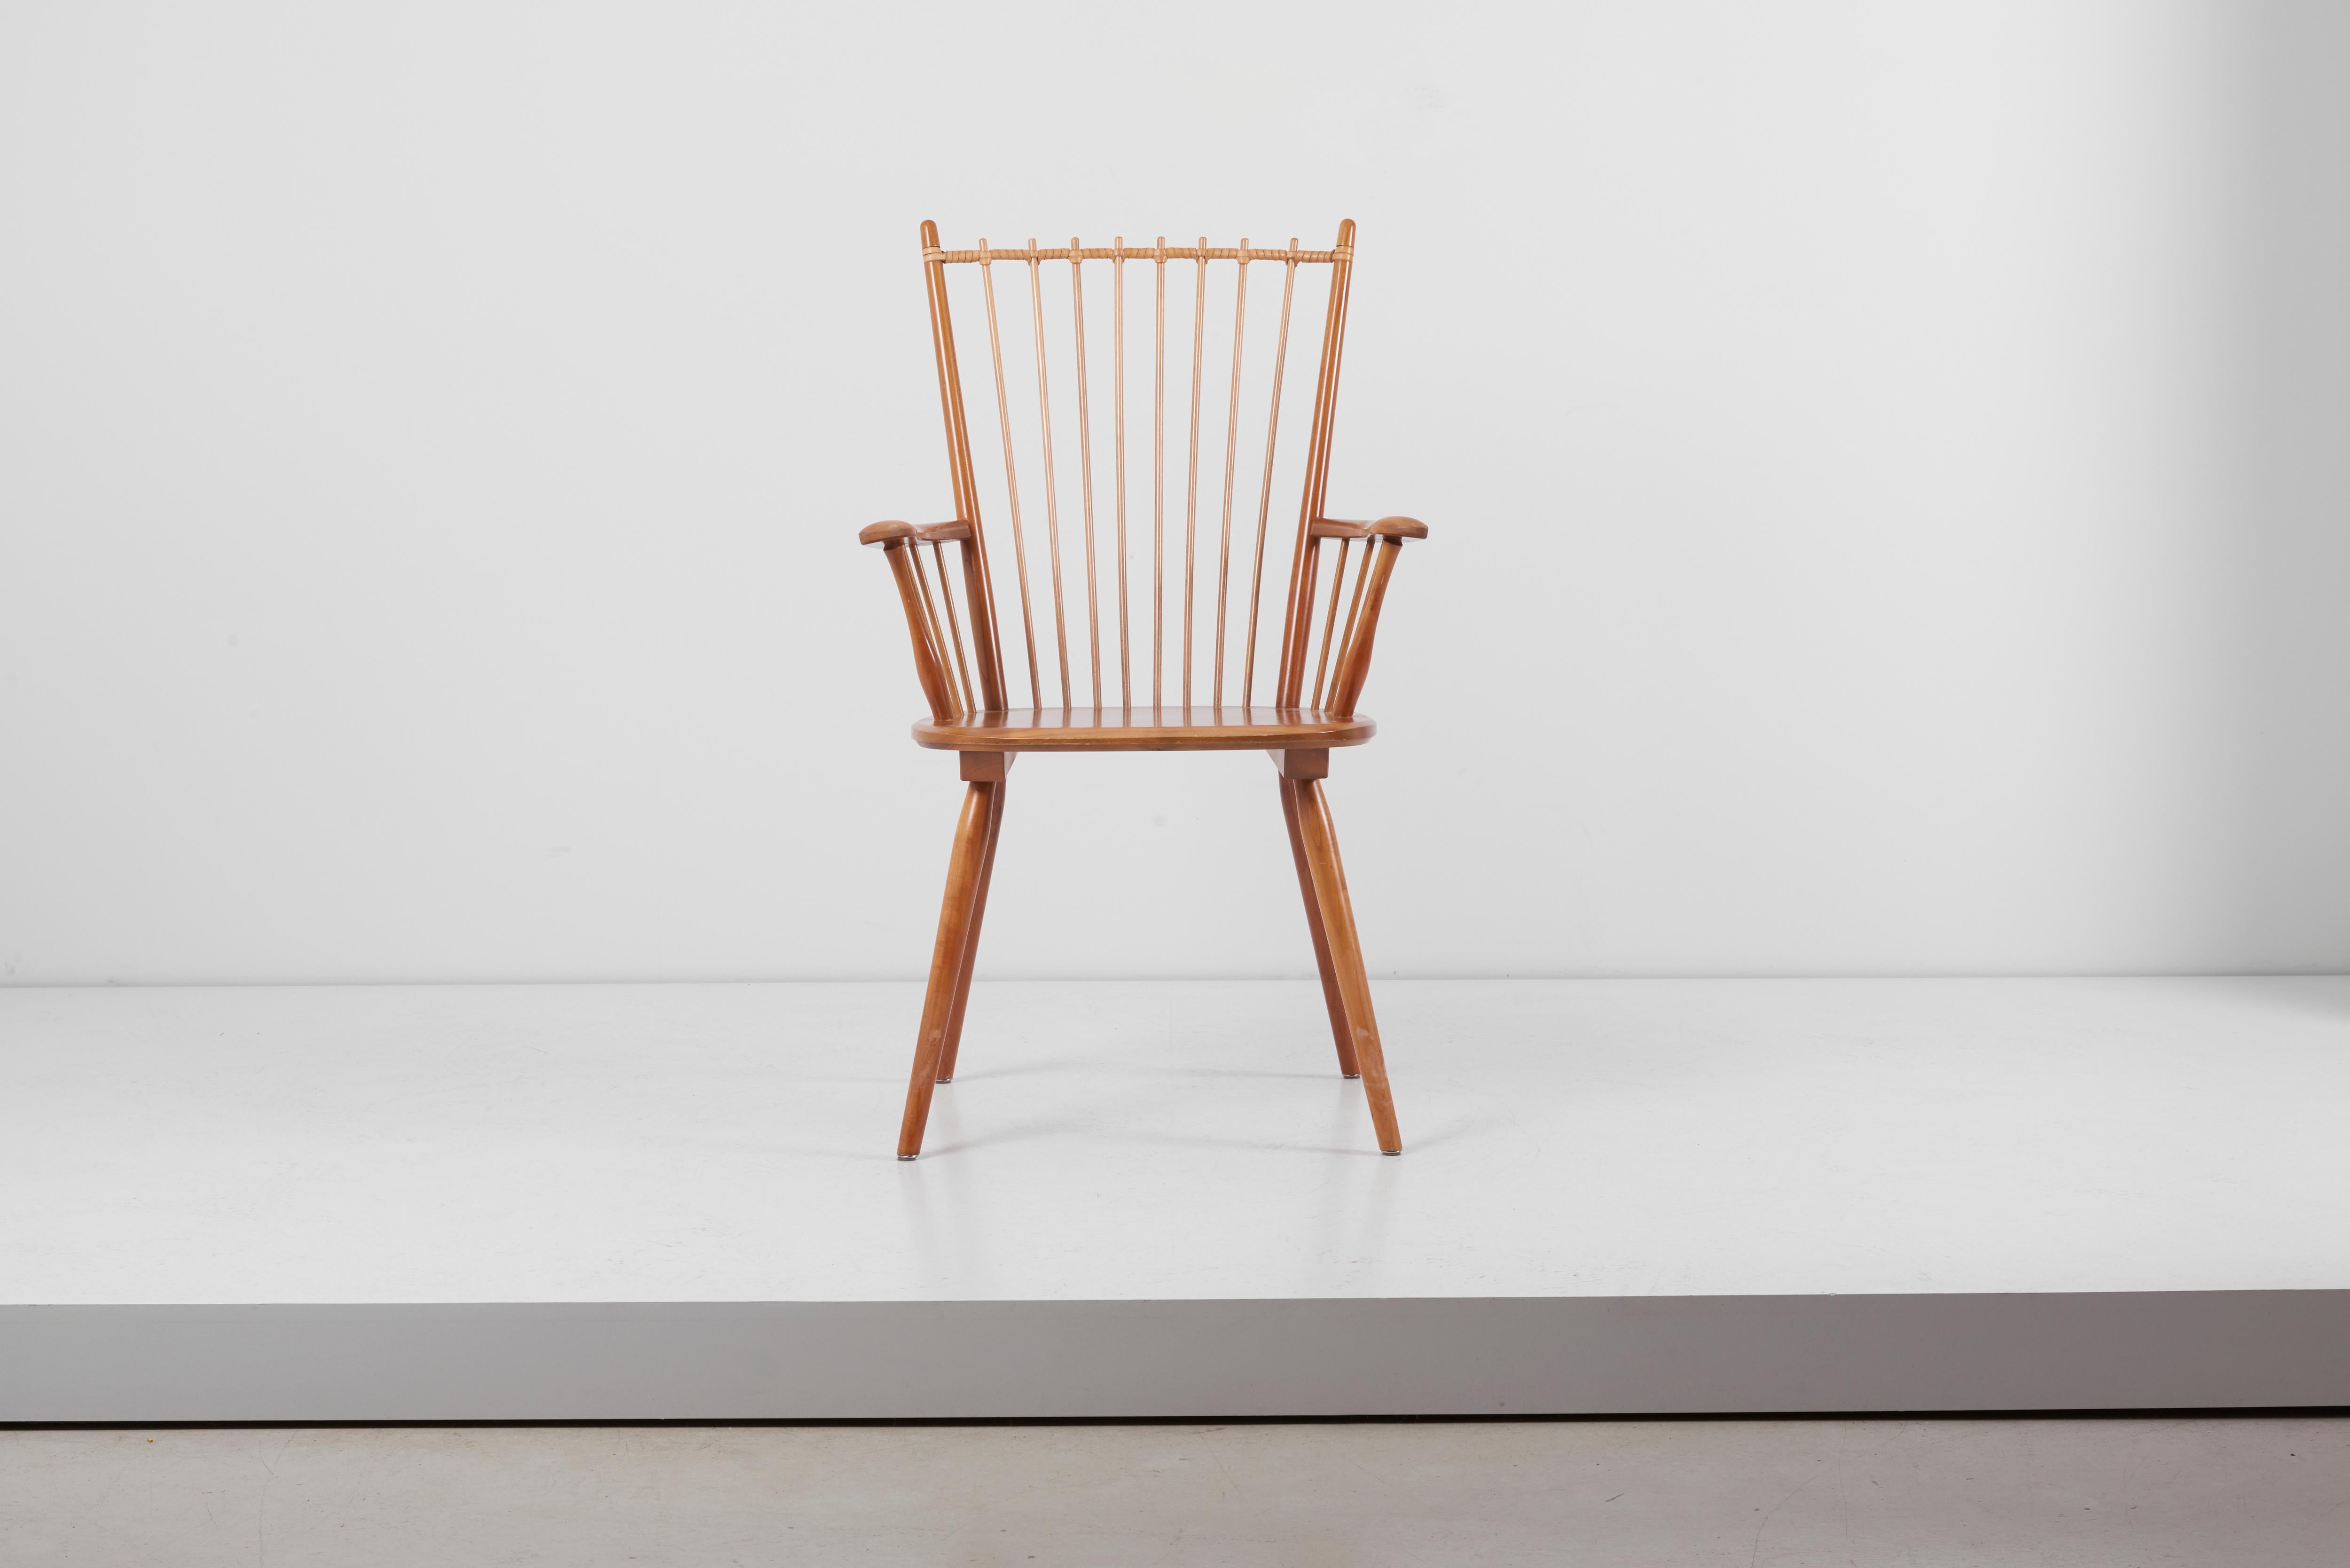 Rare chaise architecturale Arts & Crafts, conçue vers 1949 par Albert Haberer et fabriquée par Hermann Fleiner à Stuttgart, Allemagne. Le dossier flexible est constitué de fines broches, maintenues par un lien en cuir. Le cuir est un beau détail qui